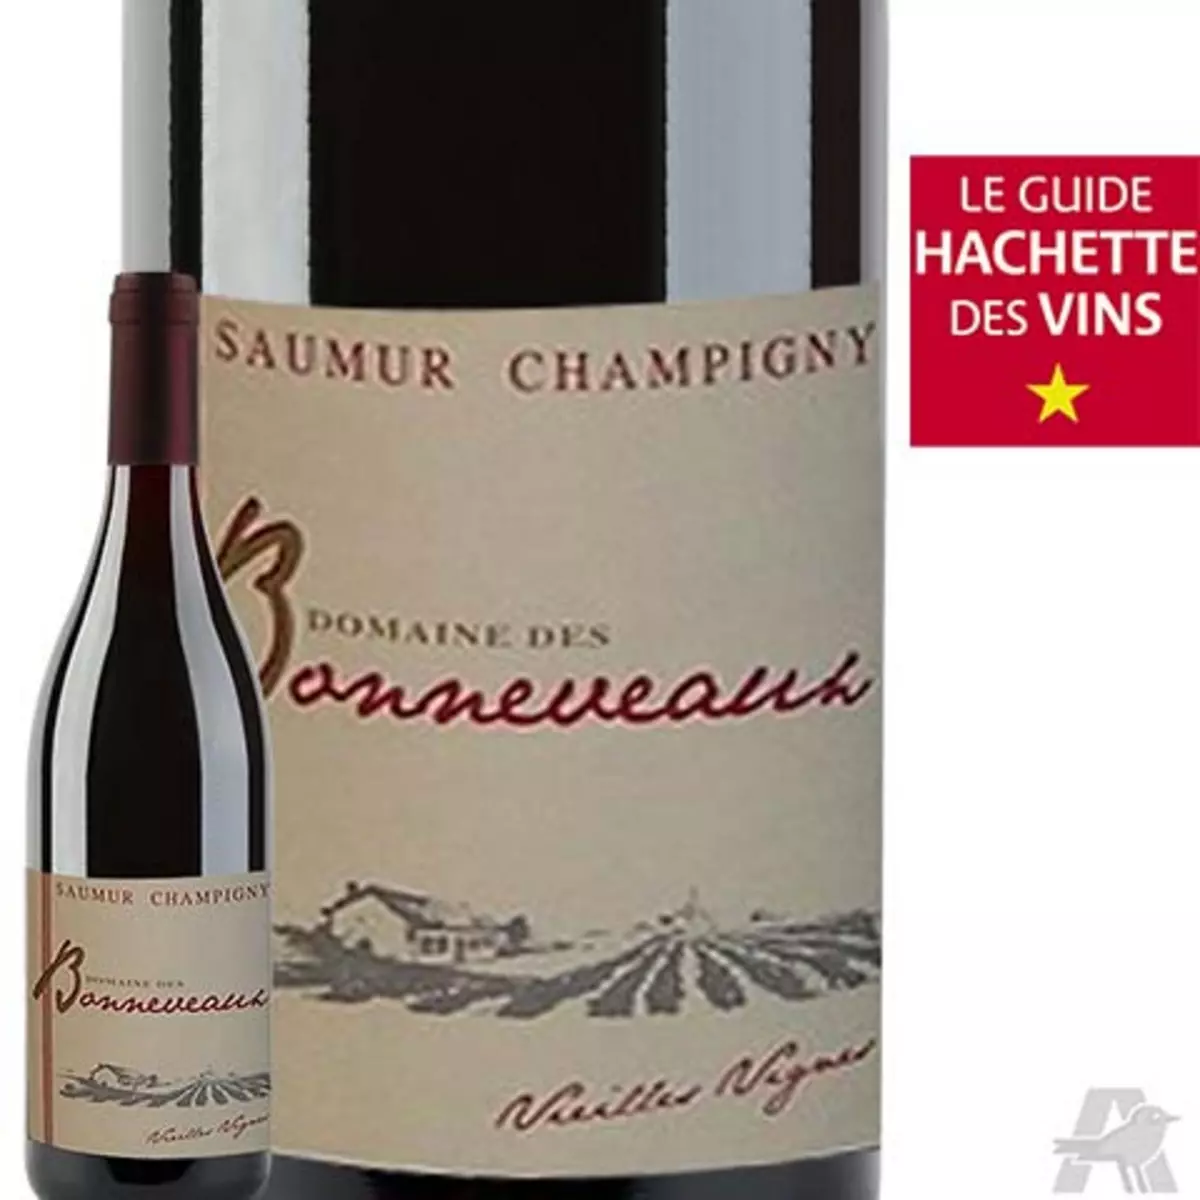 Domaine des Bonneveaux Saumur Champigny Vieilles Vignes Rouge 2014